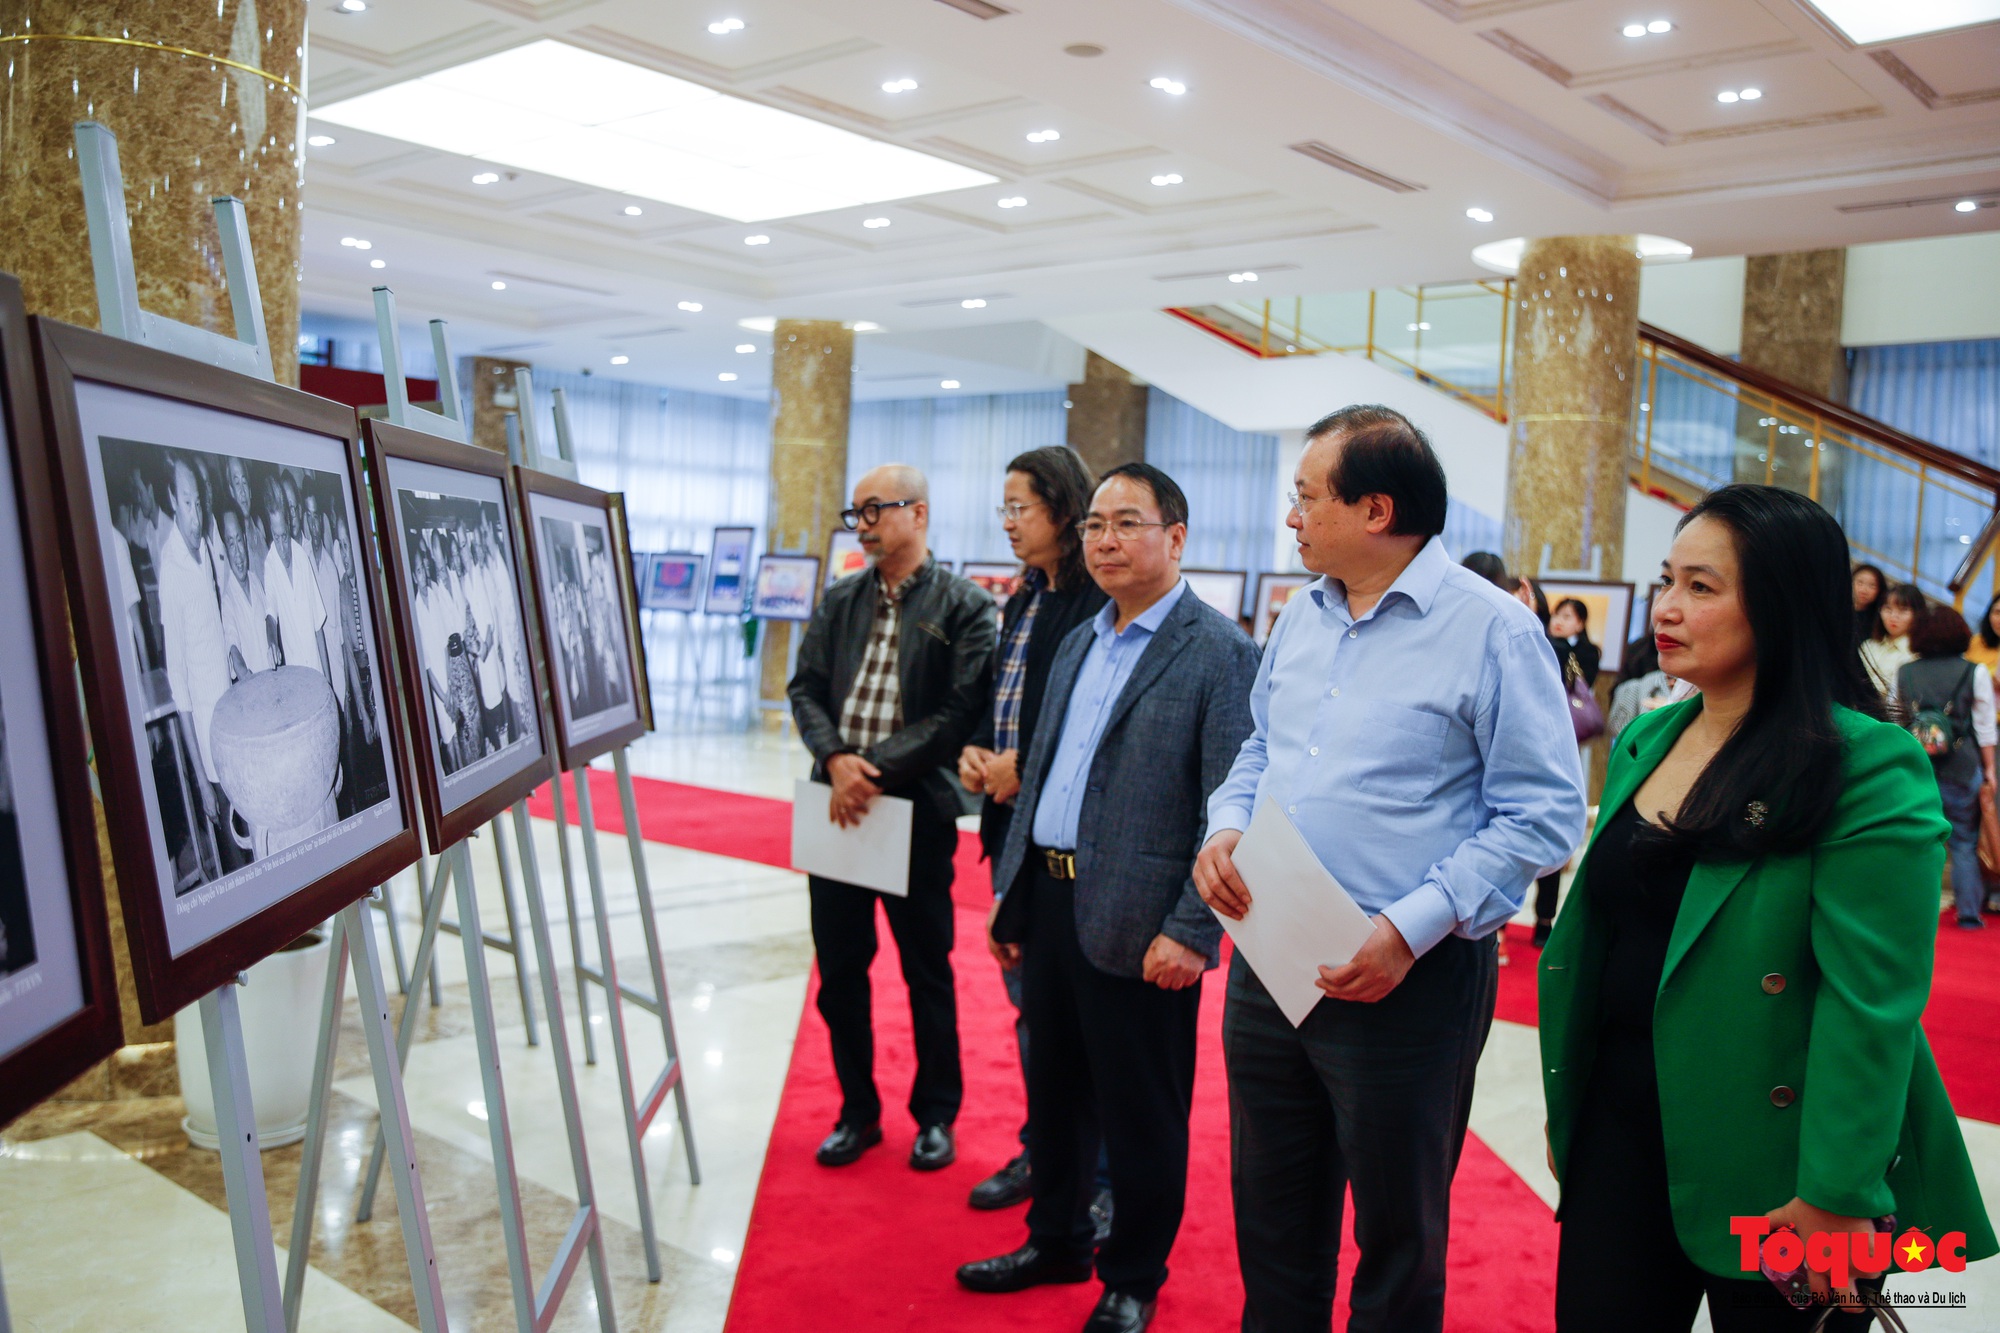 Lãnh đạo Bộ Văn hóa, Thể thao và Du lịch kiểm tra công tác chuẩn bị cho Triển lãm ảnh 80 năm Đề cương về Văn hóa Việt Nam - Ảnh 3.